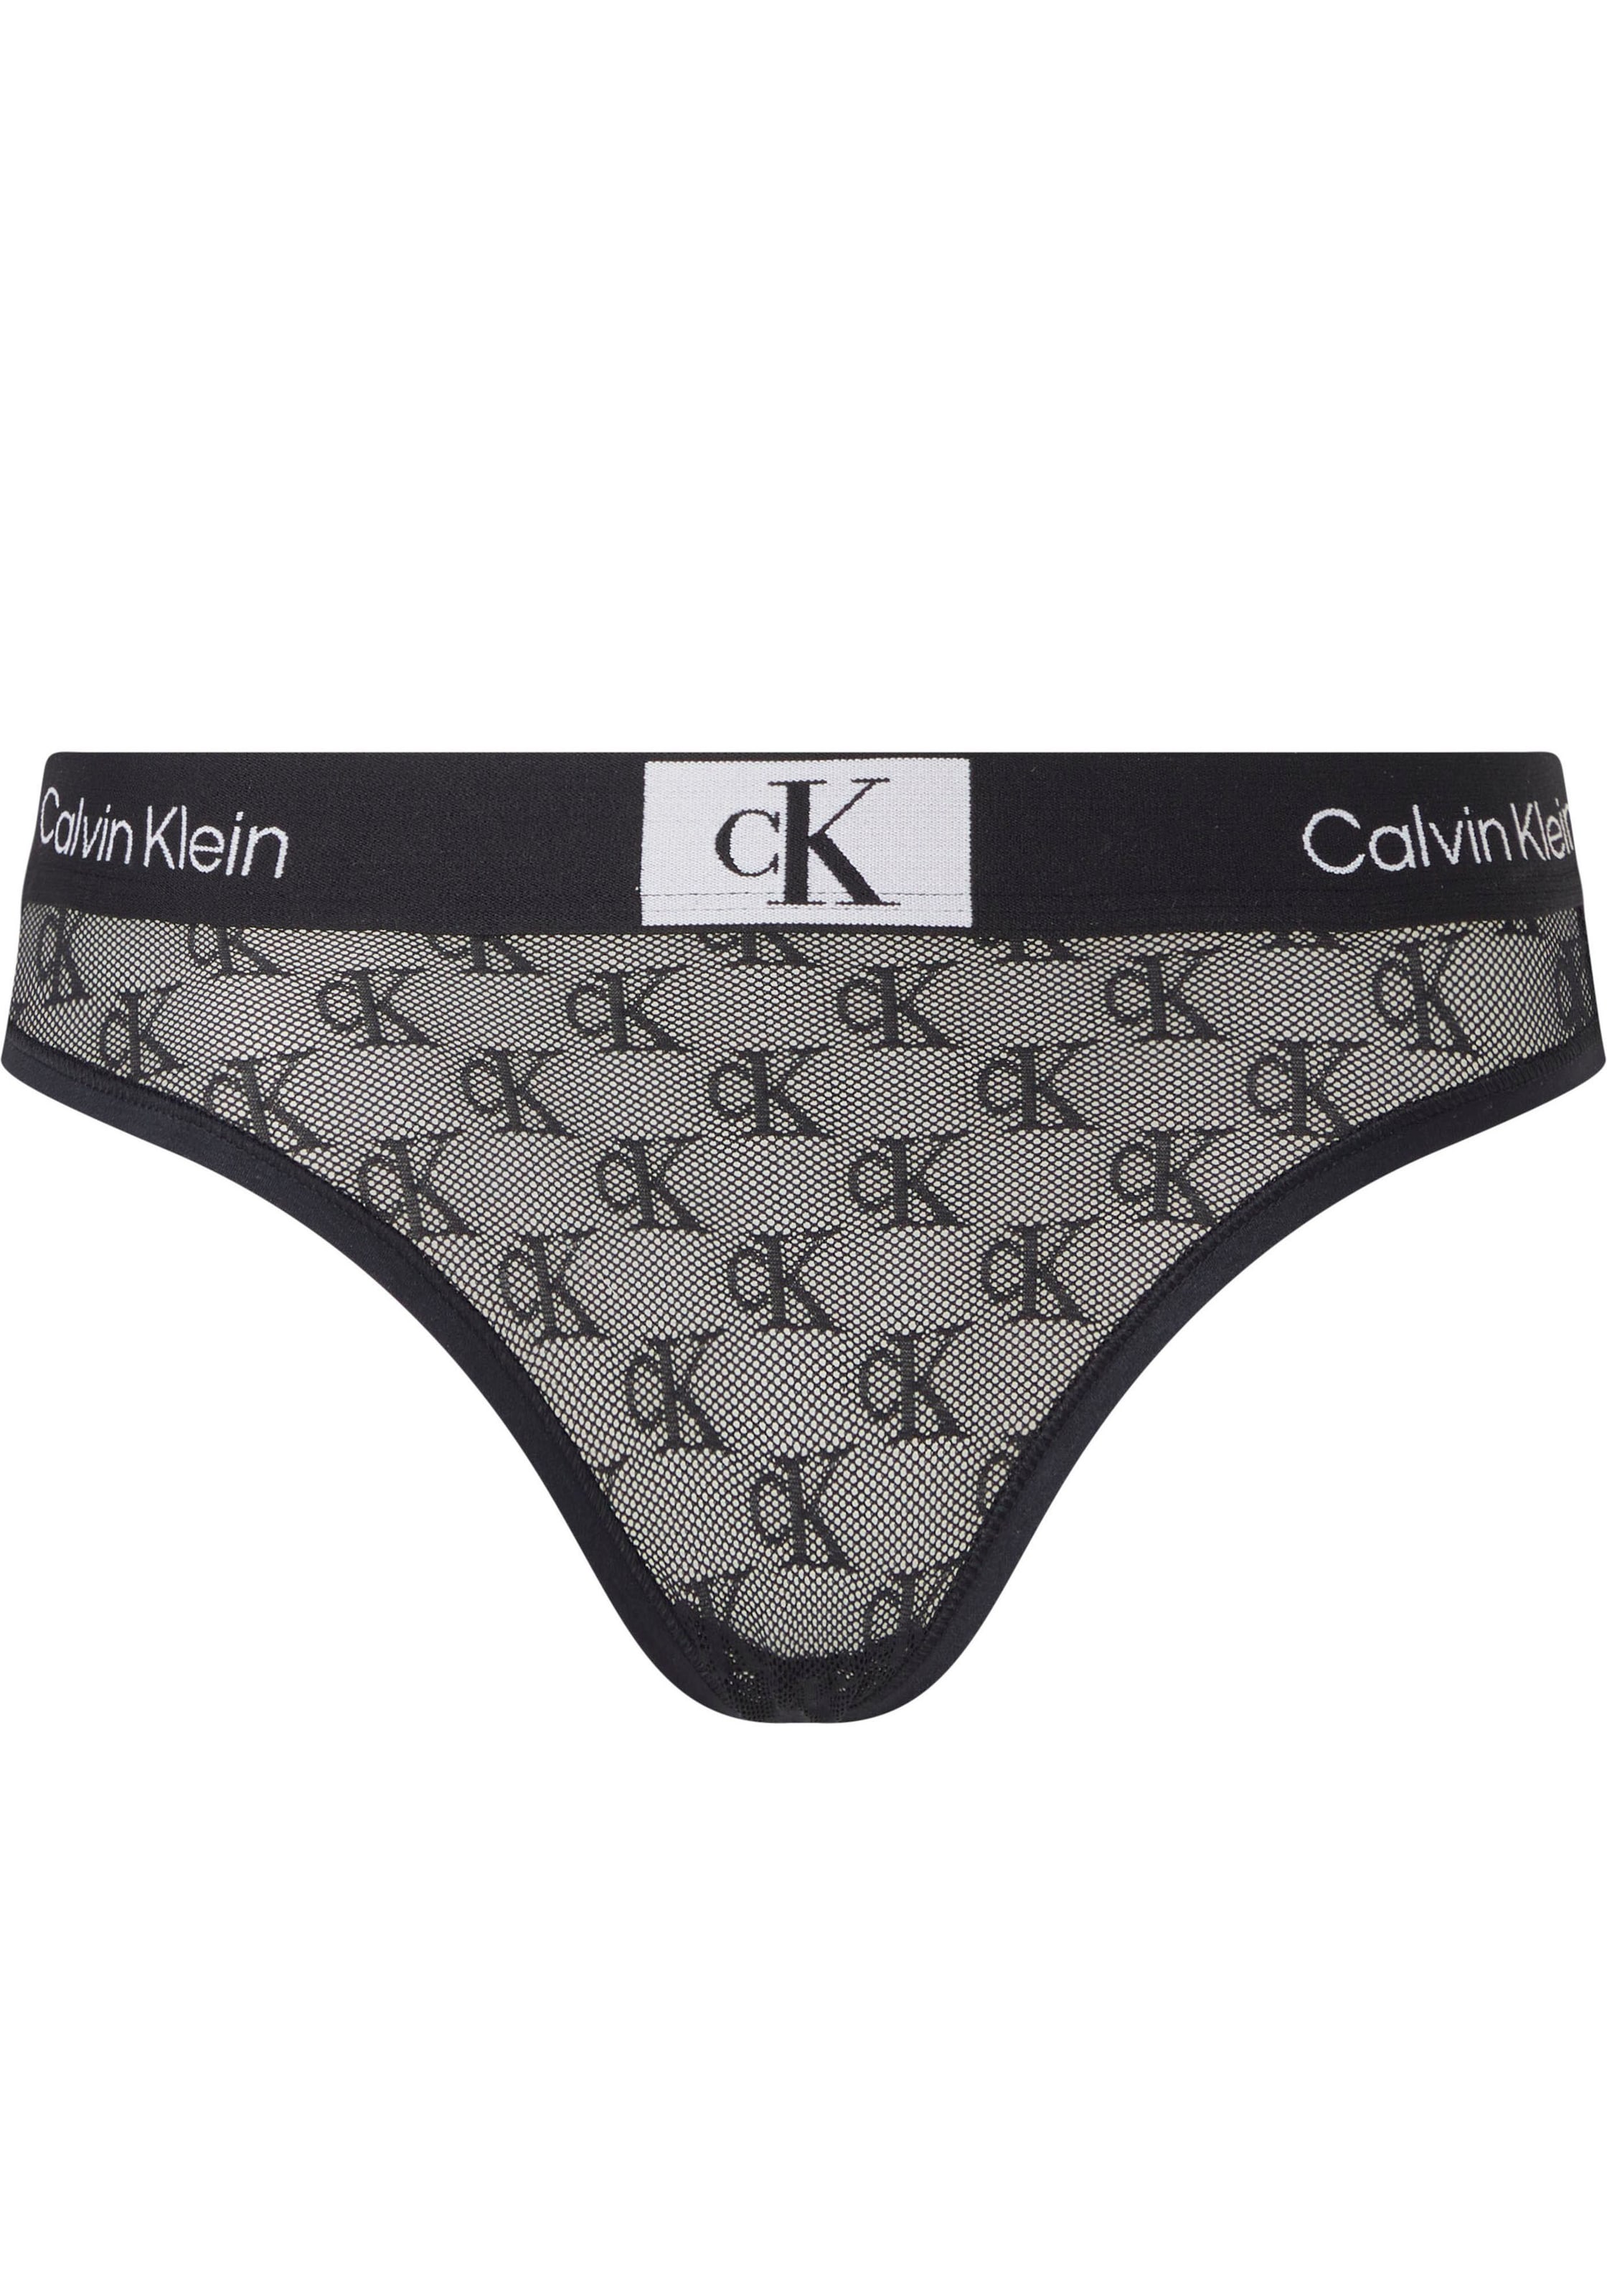 CK-Monogrammen & Wäsche Bikinislip BIKINI«, »MODERN bestellen mit Calvin Klein Rechnung auf